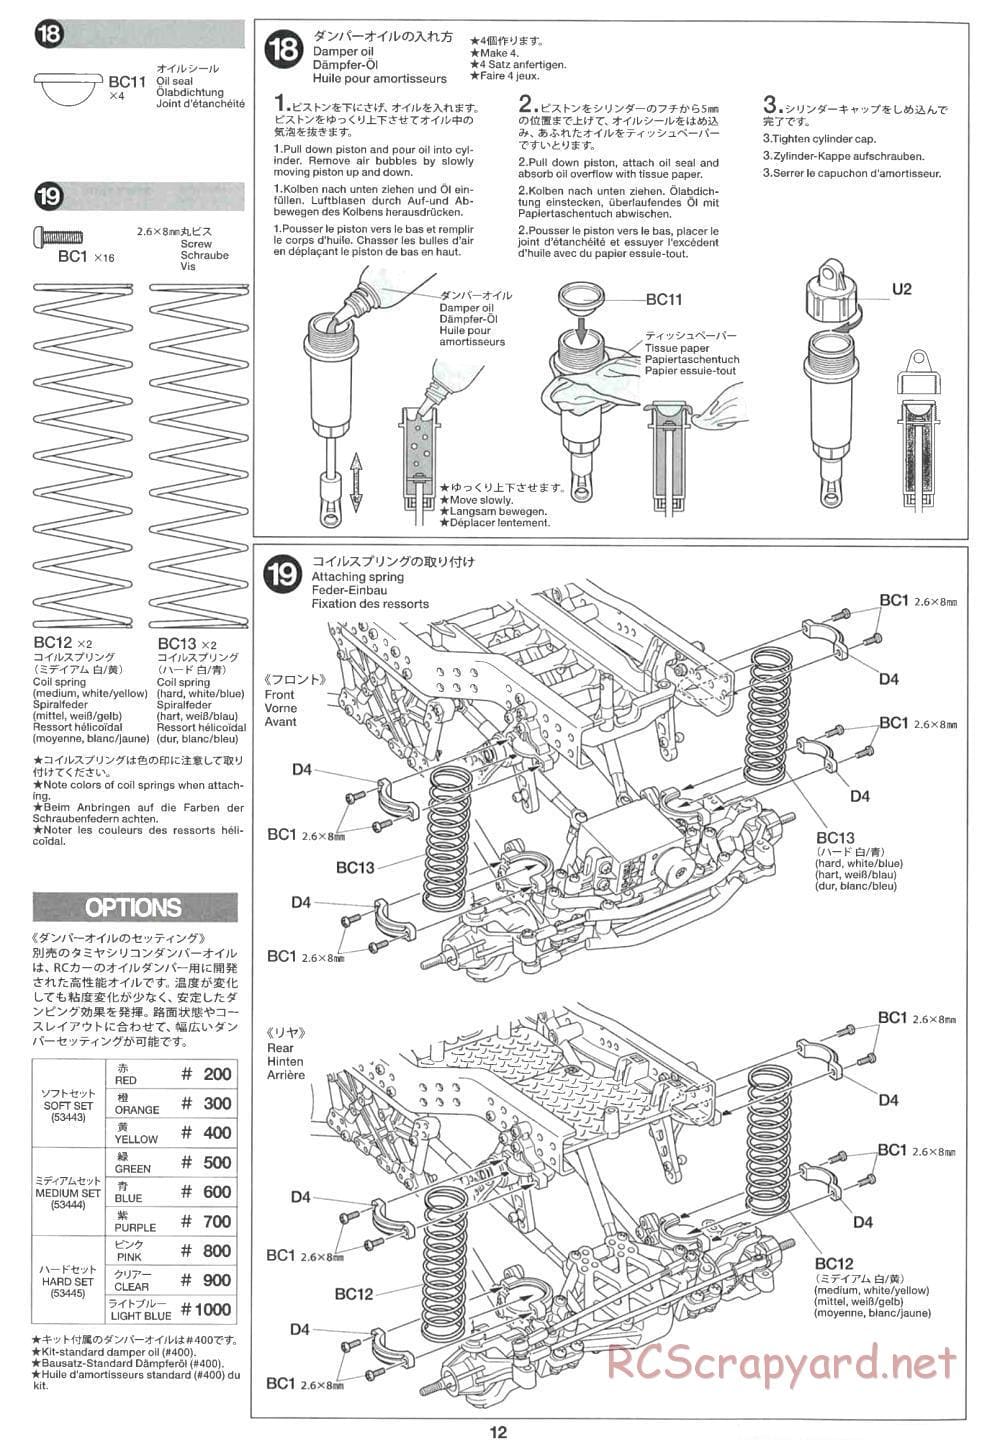 Tamiya - CR-01 Chassis - Manual - Page 12